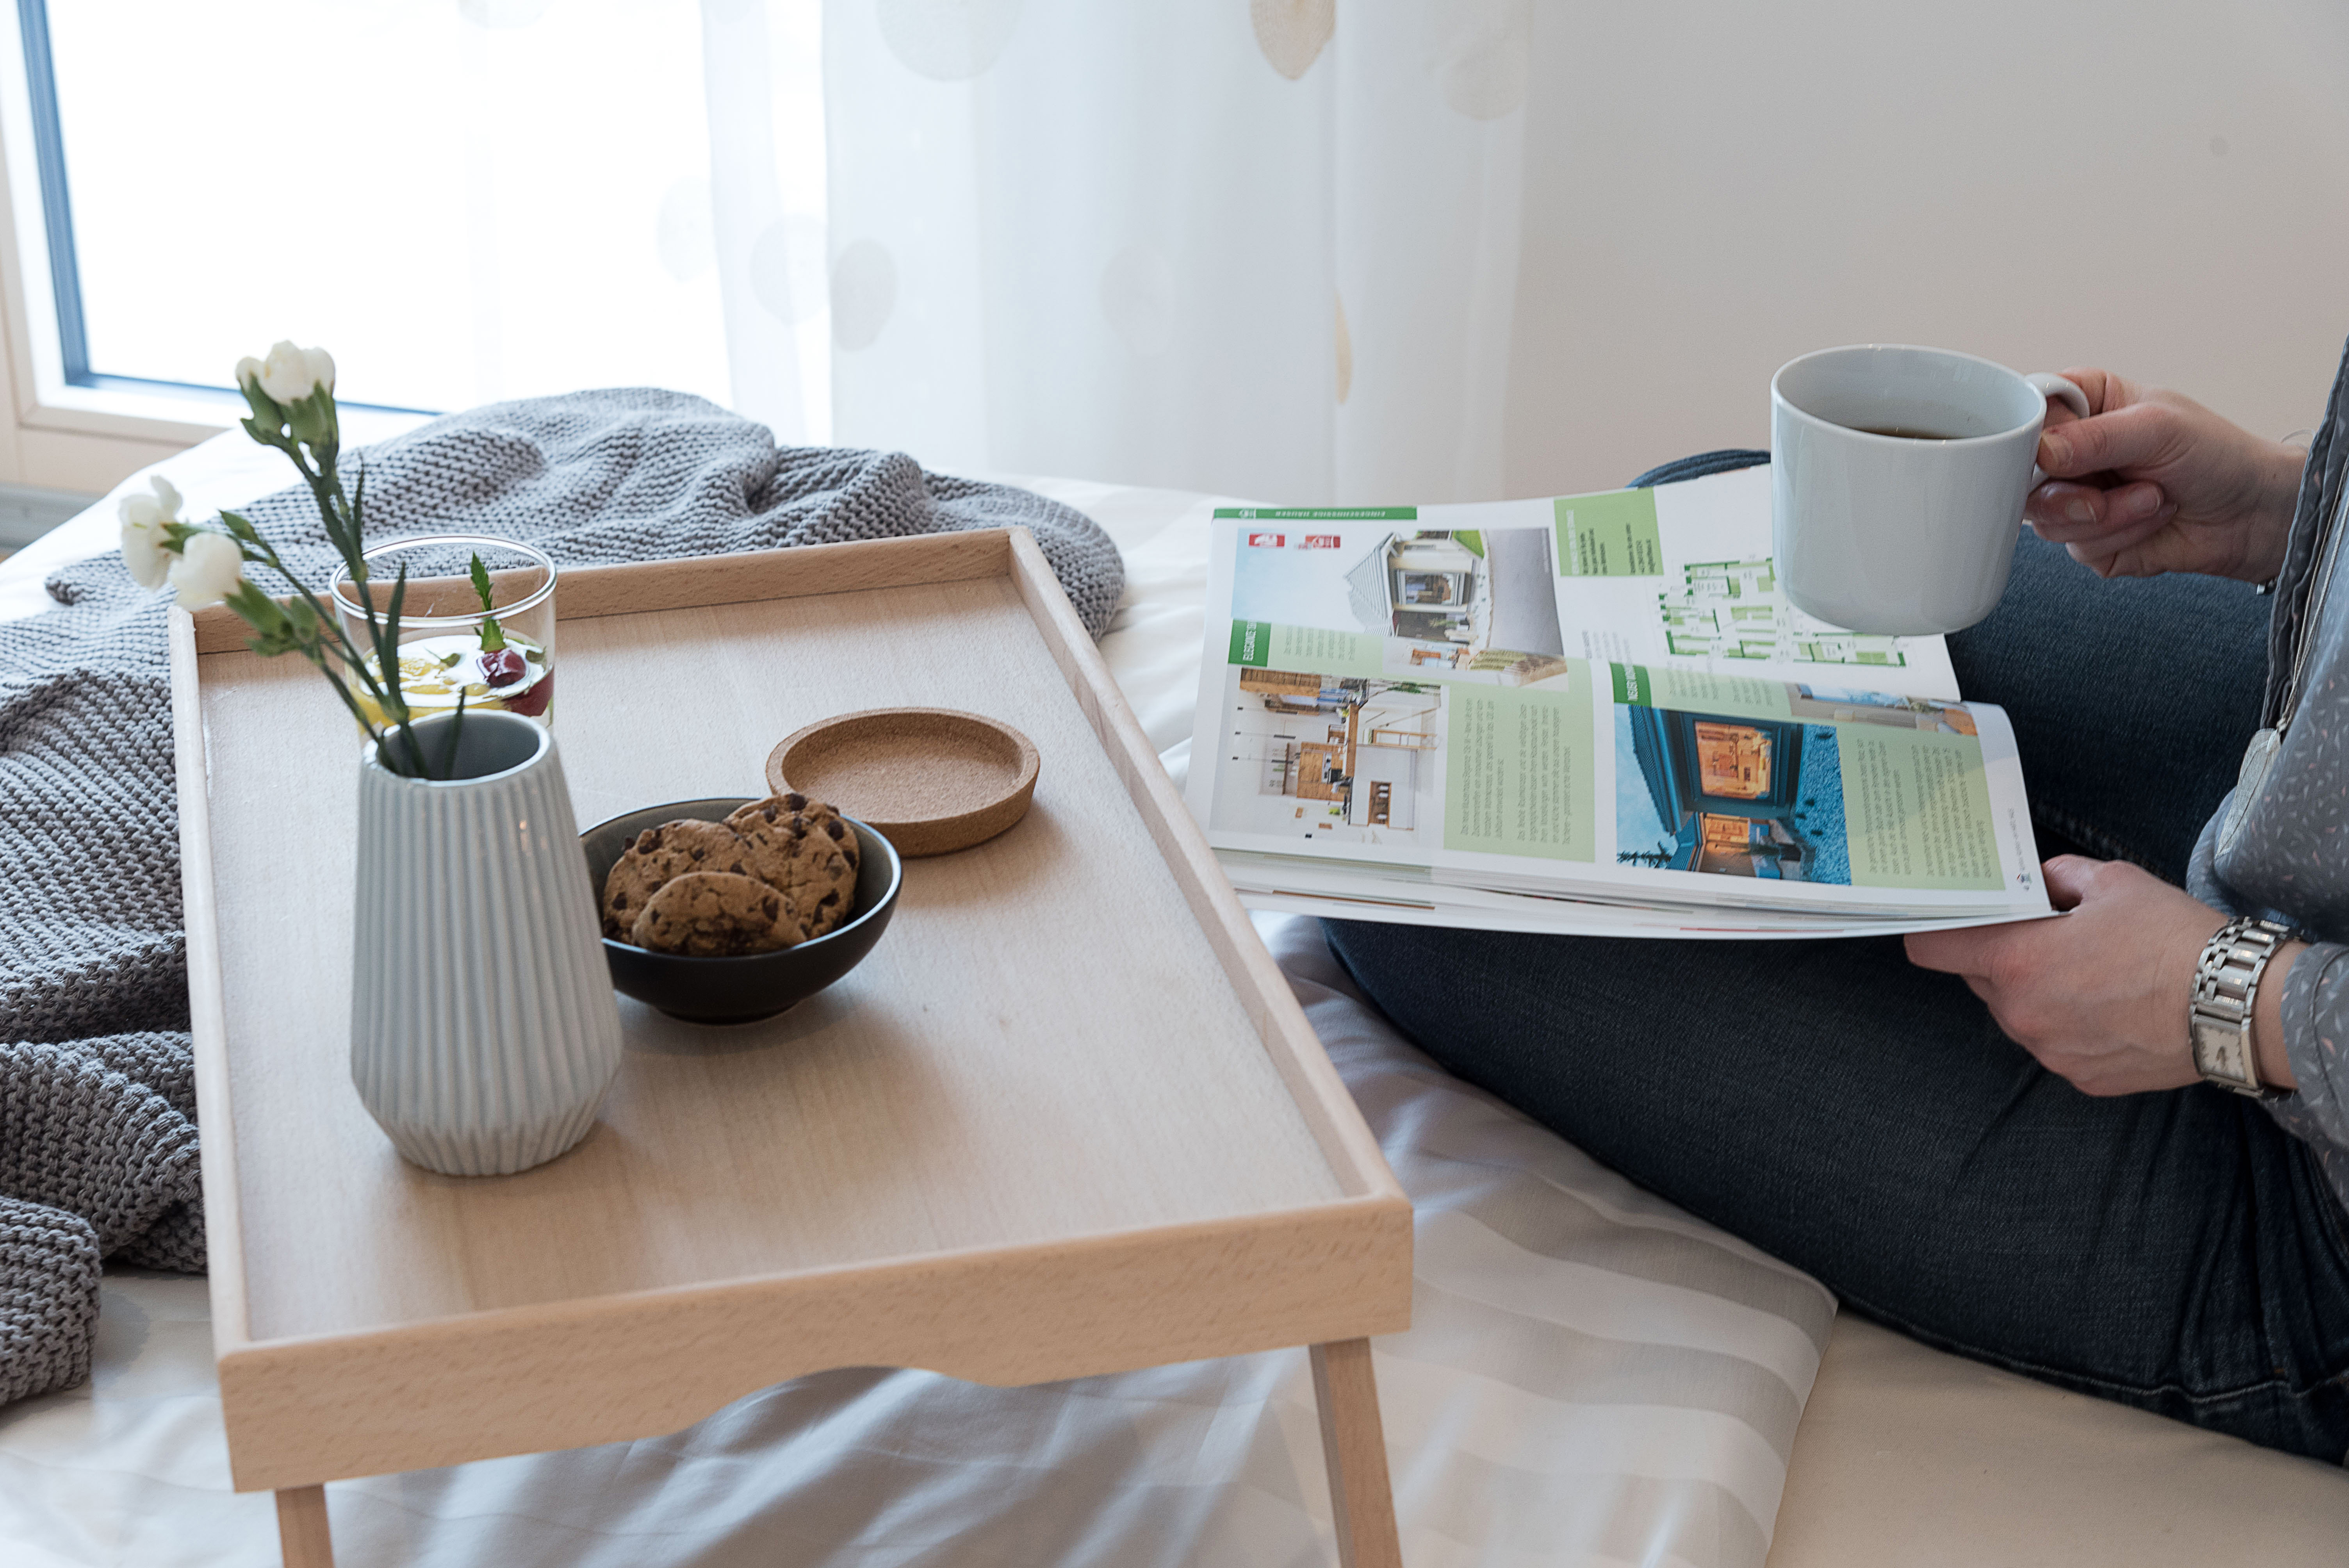 Frau liest Hartl Haus Katalog im Bett. Tablet aus Holz mit Keksen und Kaffee steht auf dem Bett